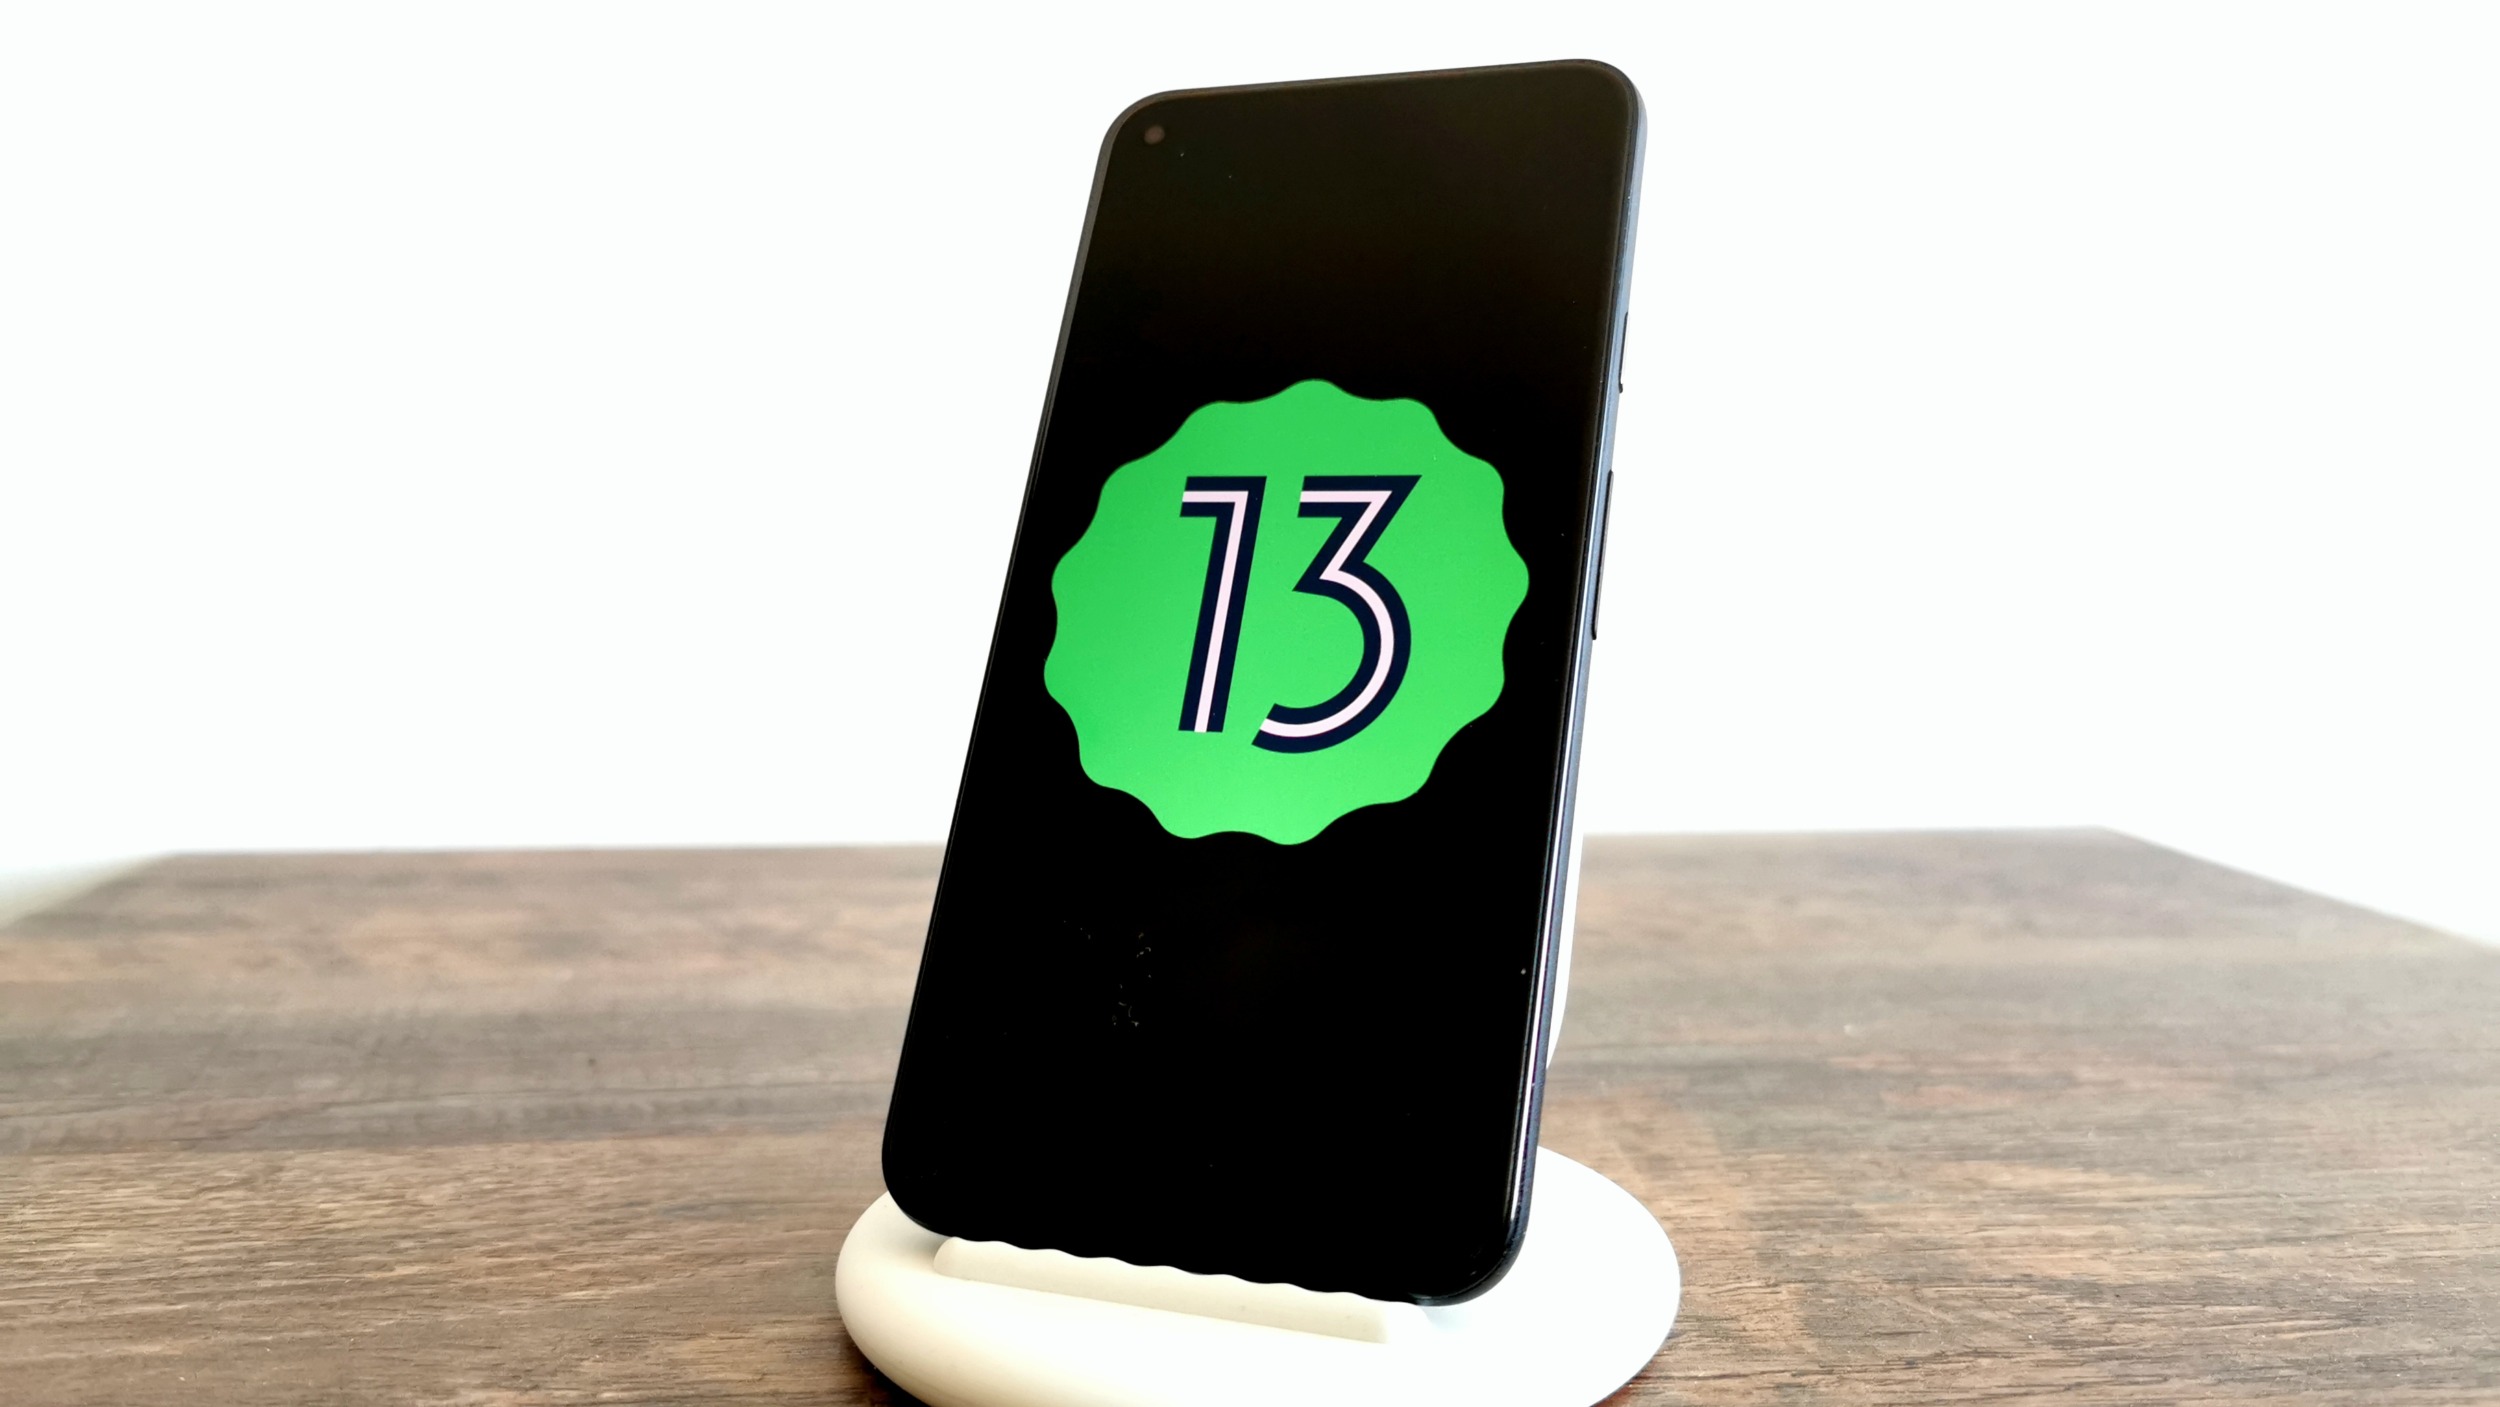 Vychází Android 13 Beta 2, nejen Pixely mohou testovat [aktualizováno]